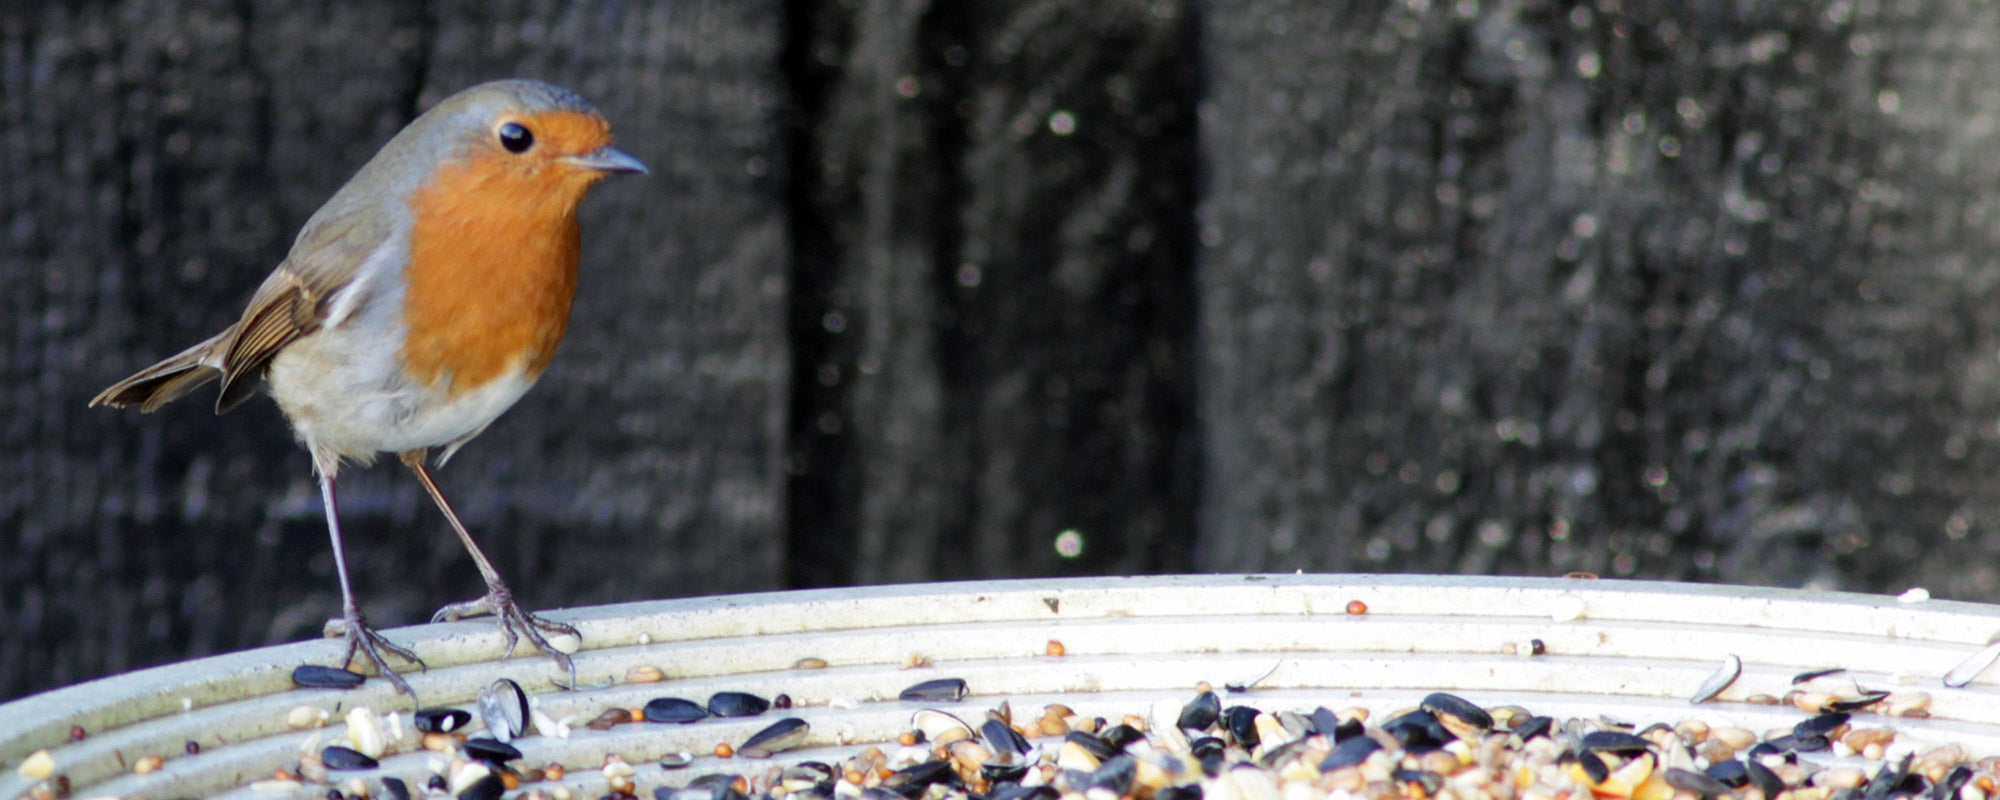 robin feeding on a bird table